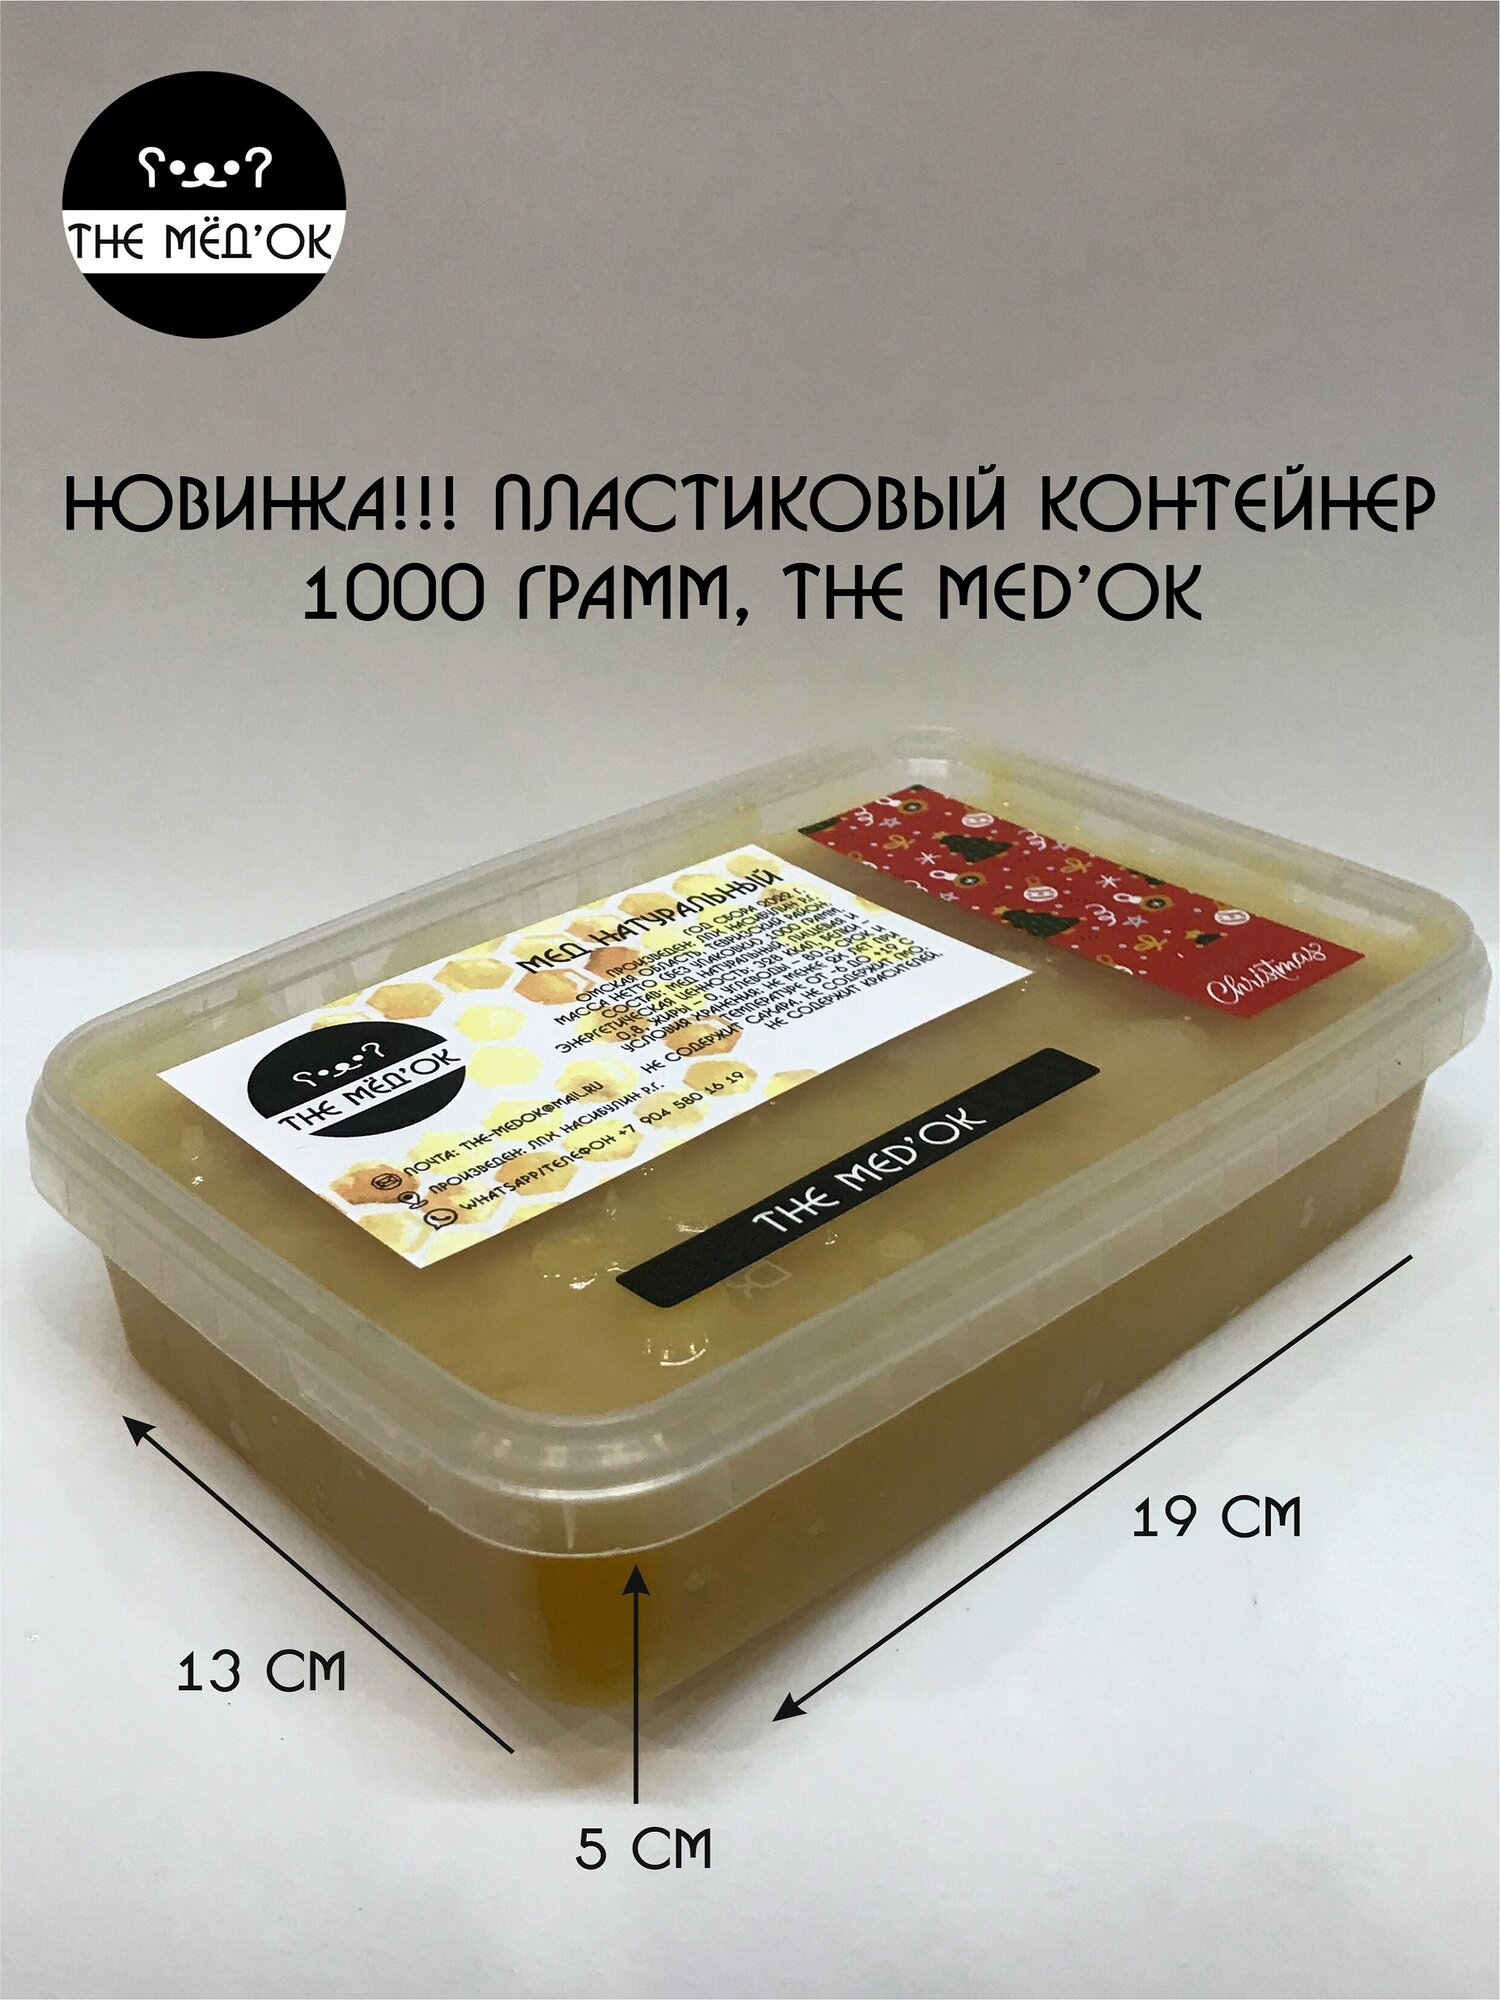 Разнотравье Мёд натуральный THE MED'OK контейнер 1000 грамм - фотография № 2